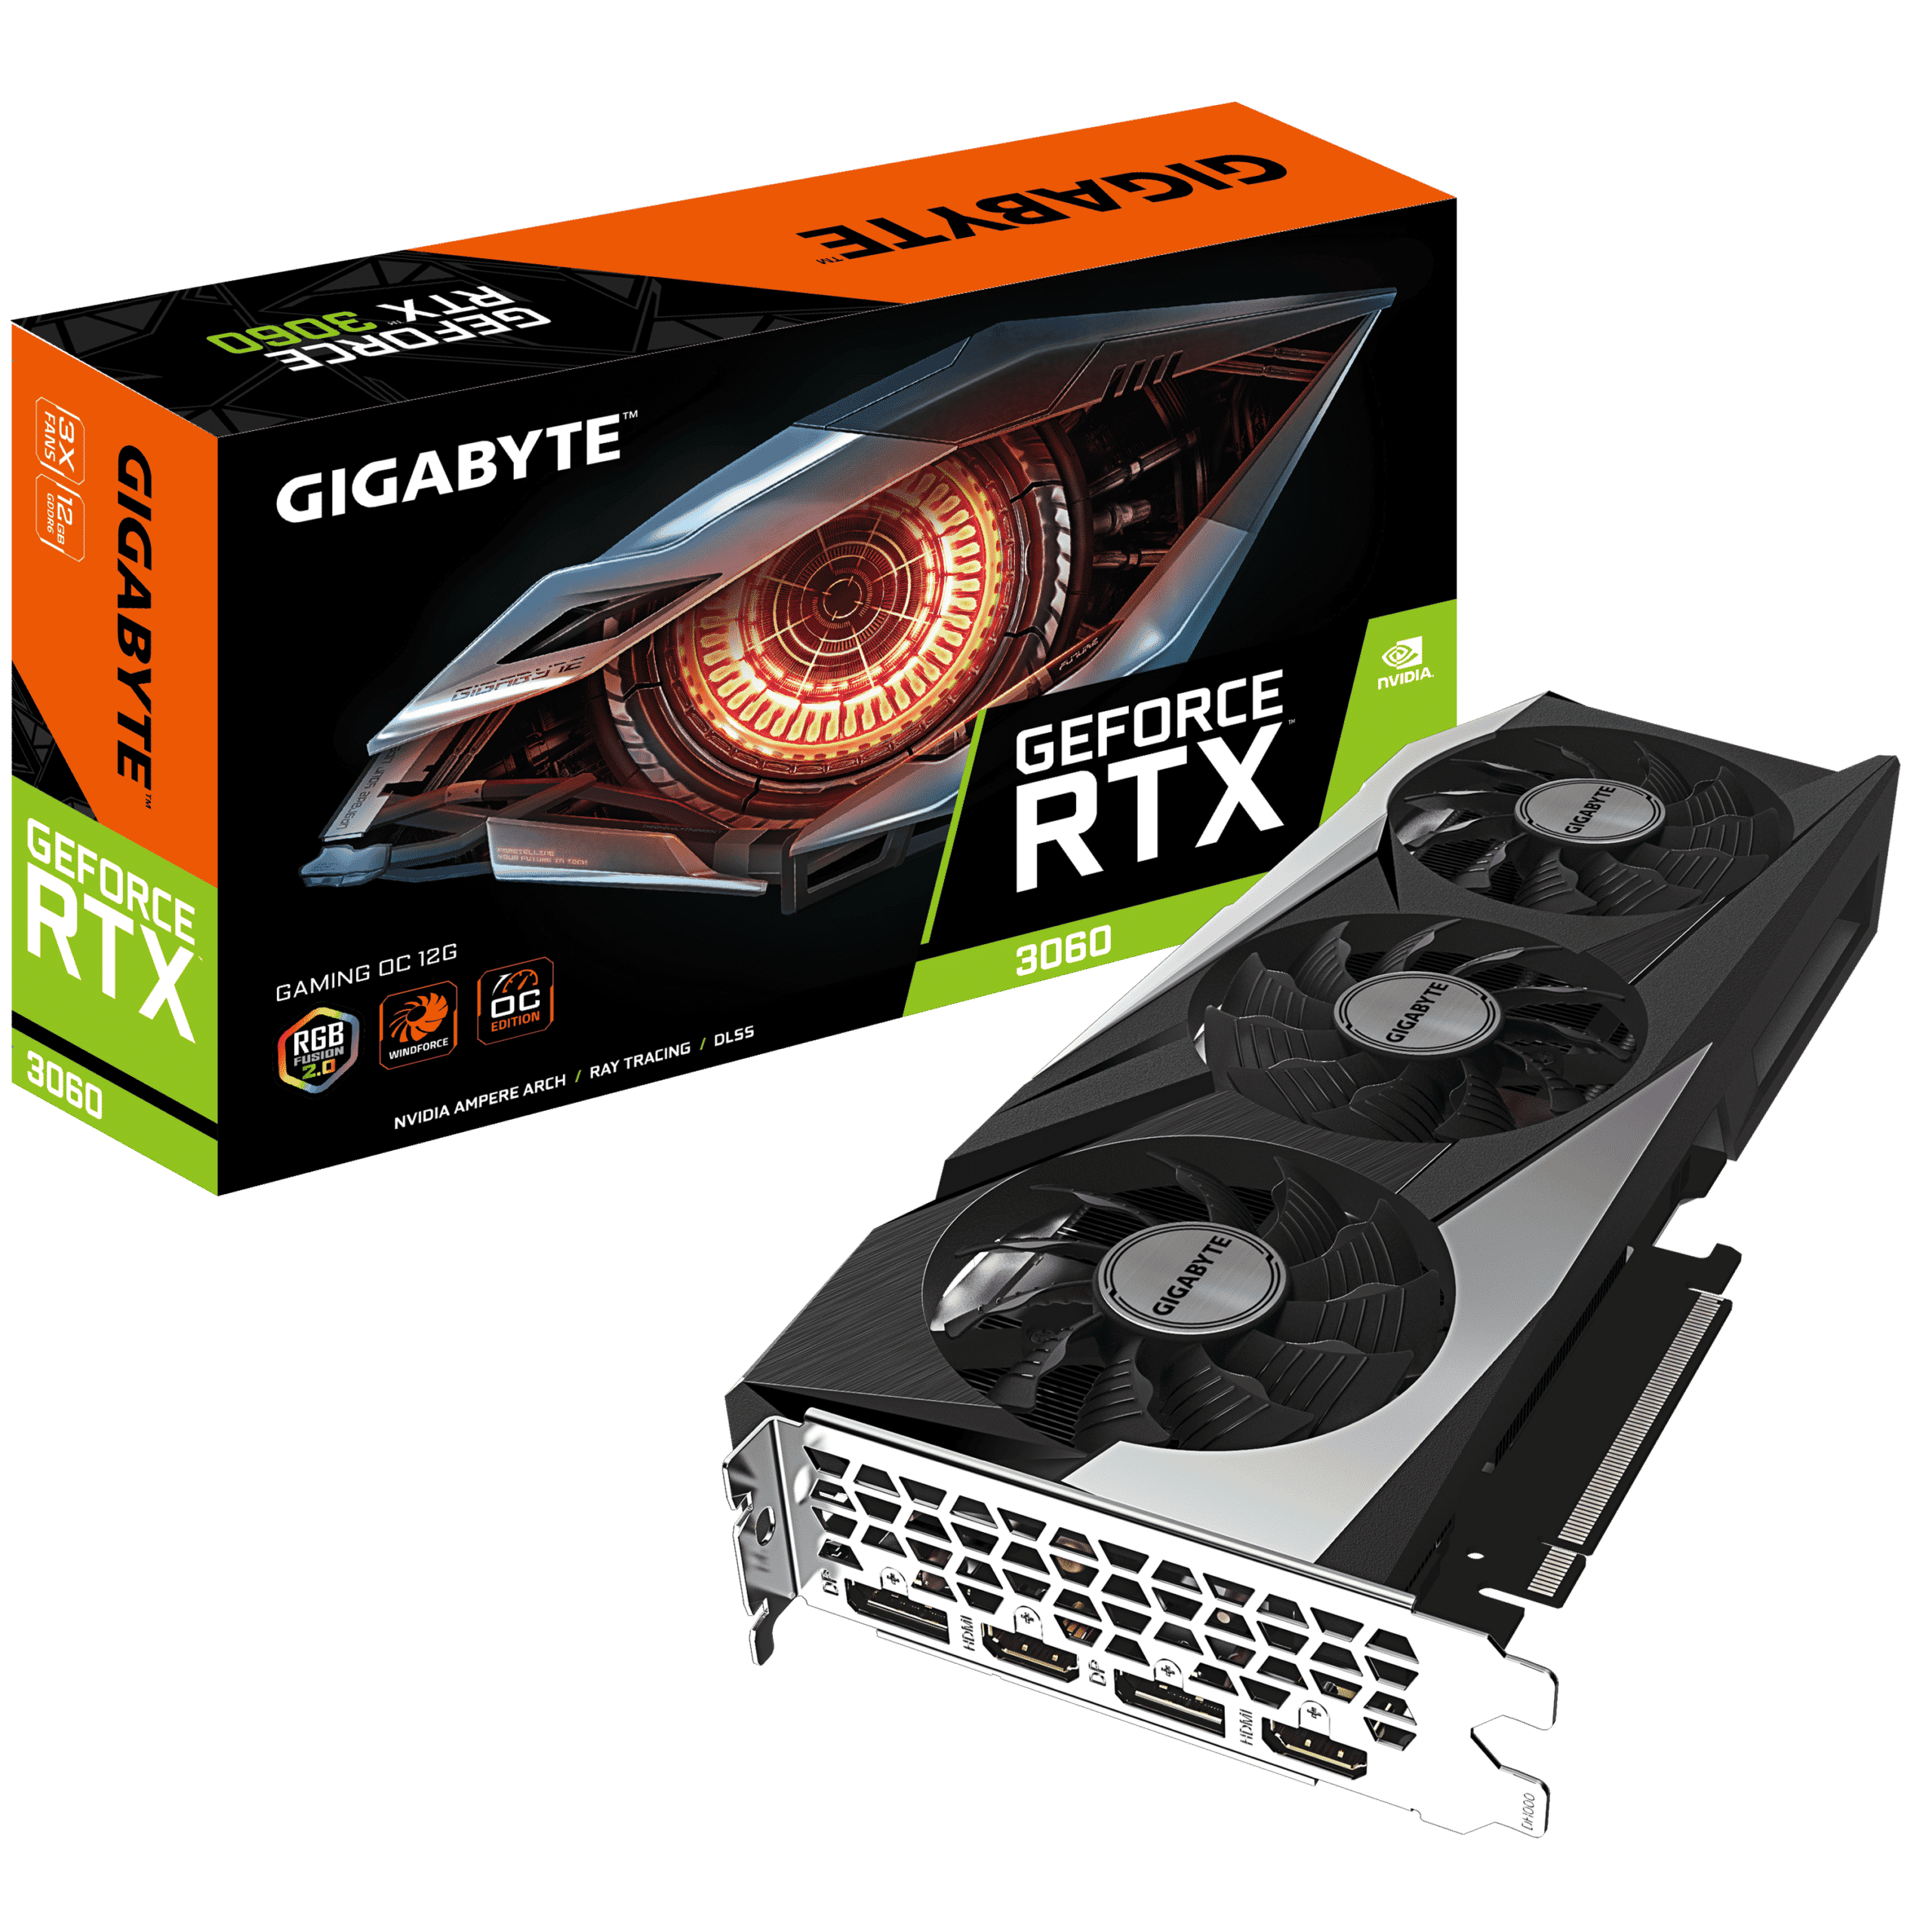 Gigabyte GeForce RTX 3060 GAMING OC 12G Box View